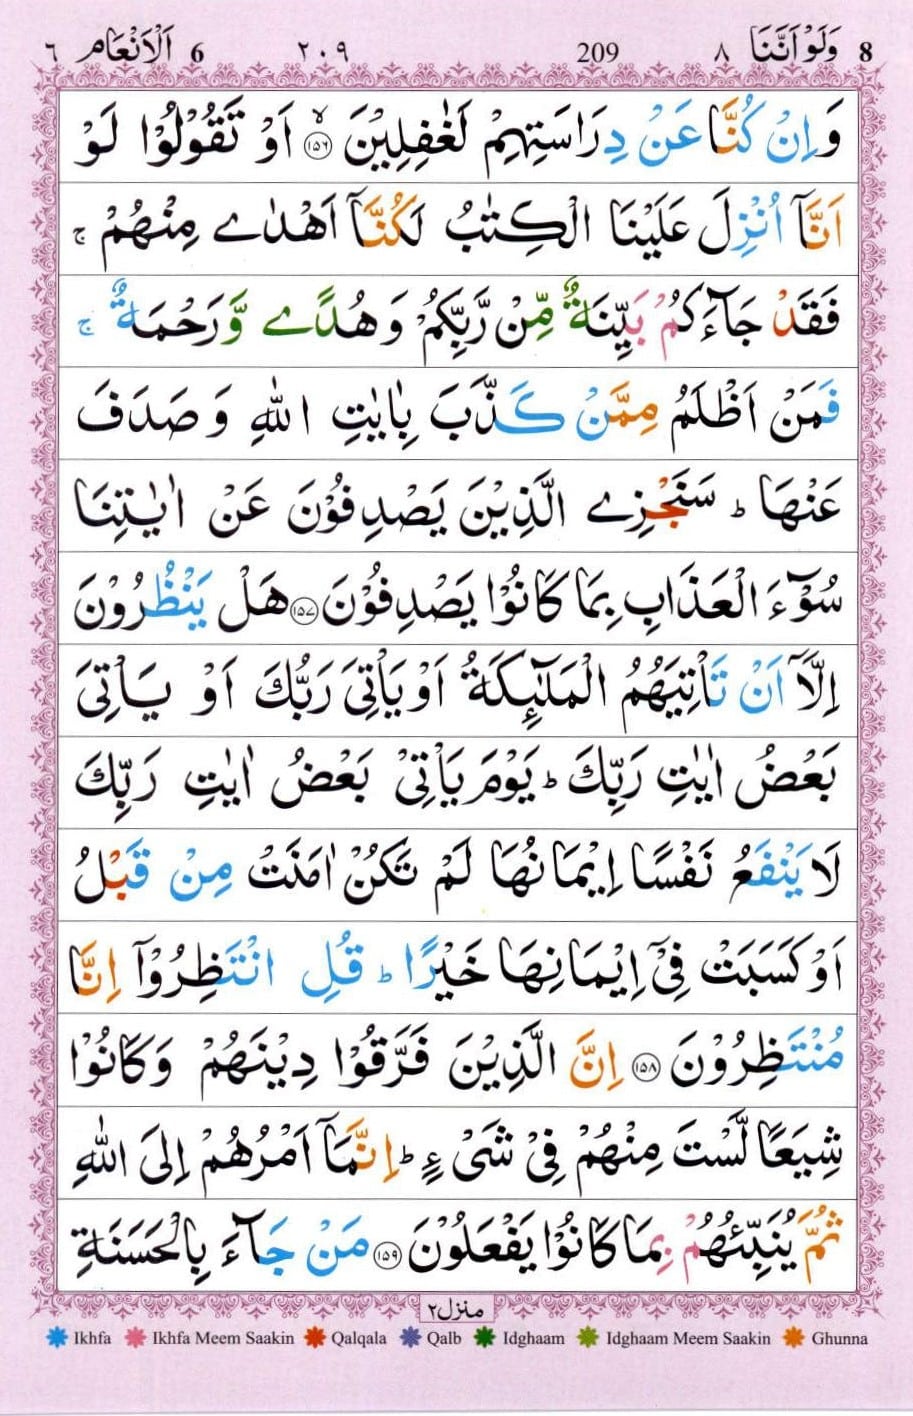 Surah Anaam translation in urdu